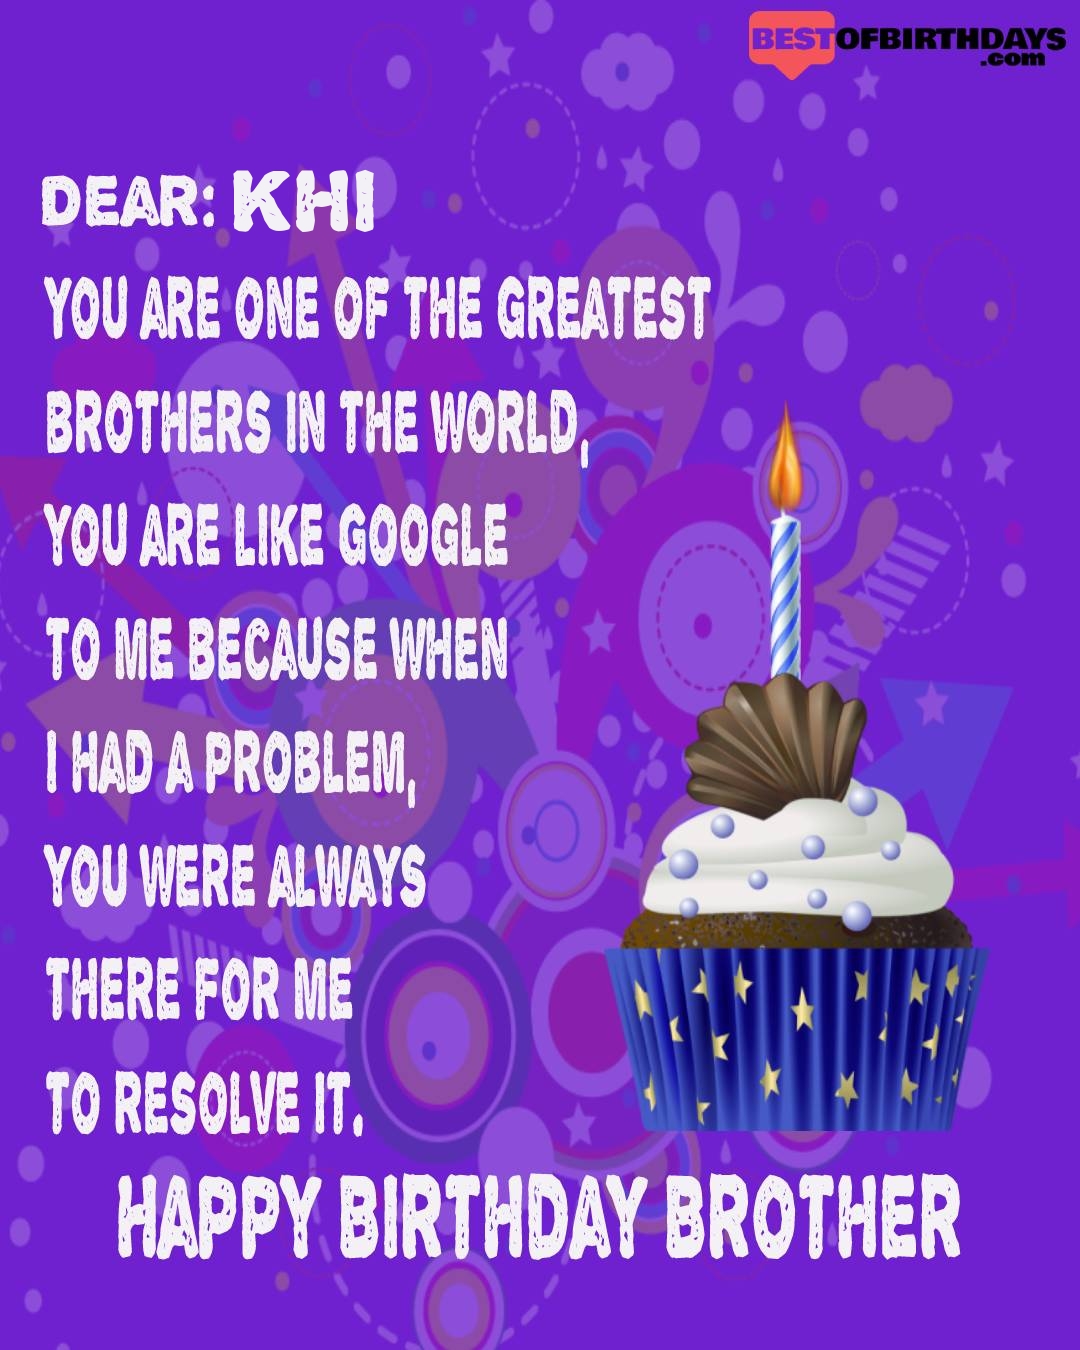 Happy birthday khi bhai brother bro